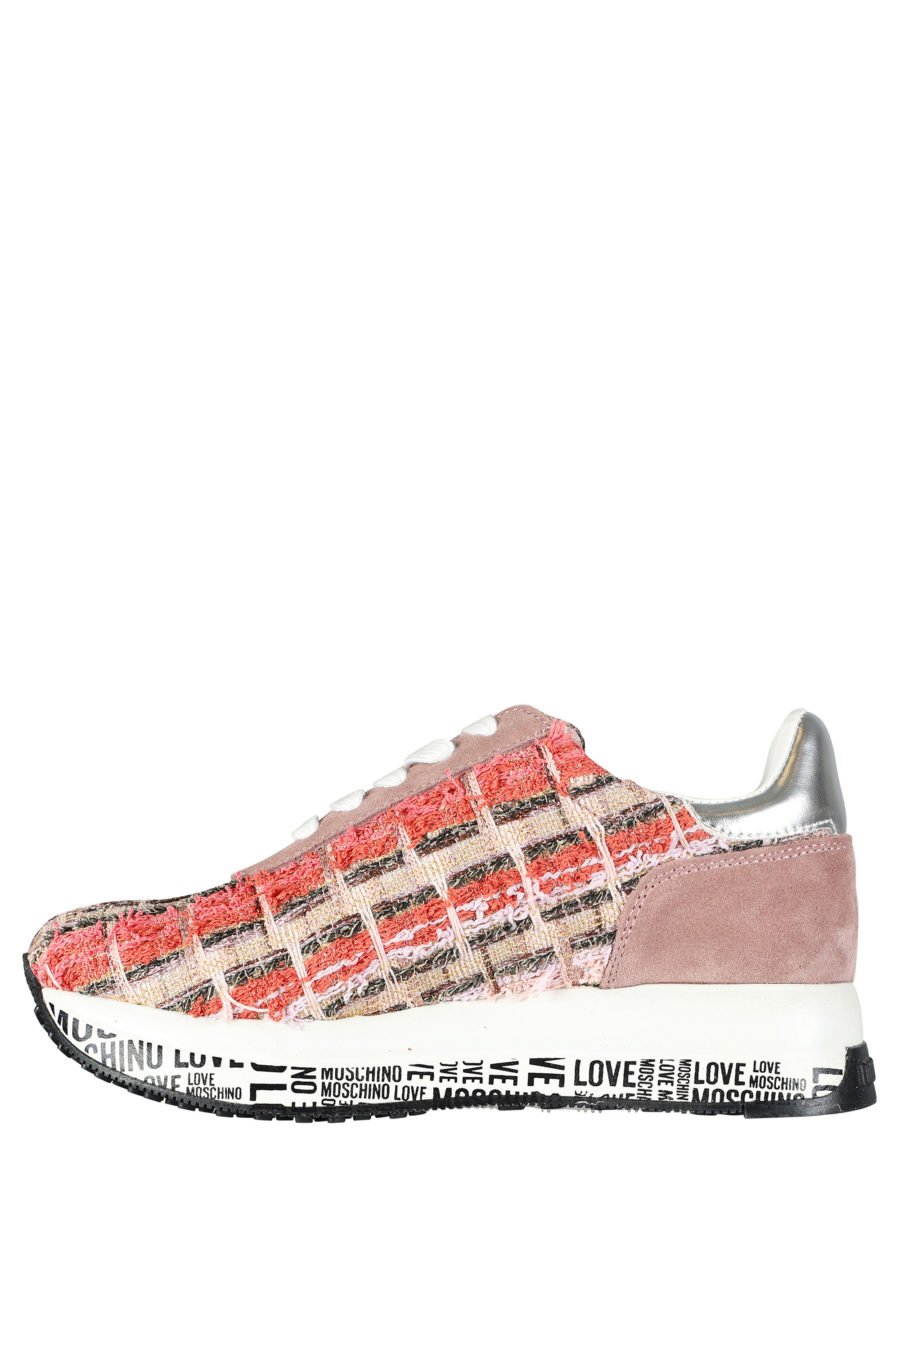 Zapatillas multi color en tejido "tweet" - IMG 5254